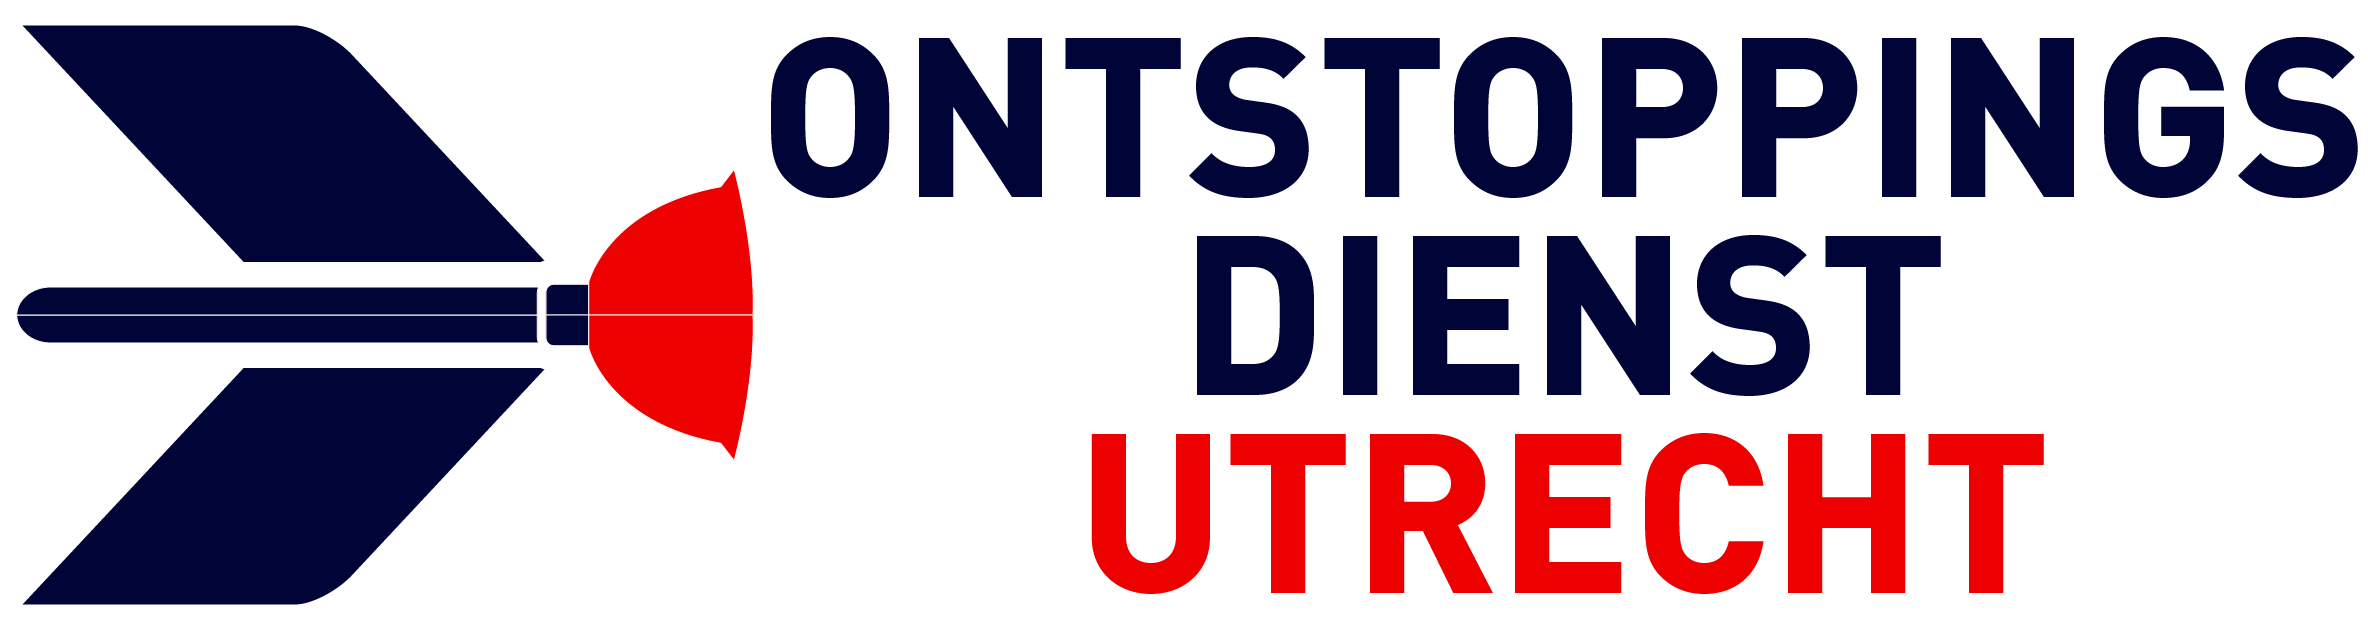 Ontstoppingsdienst Utrecht logo